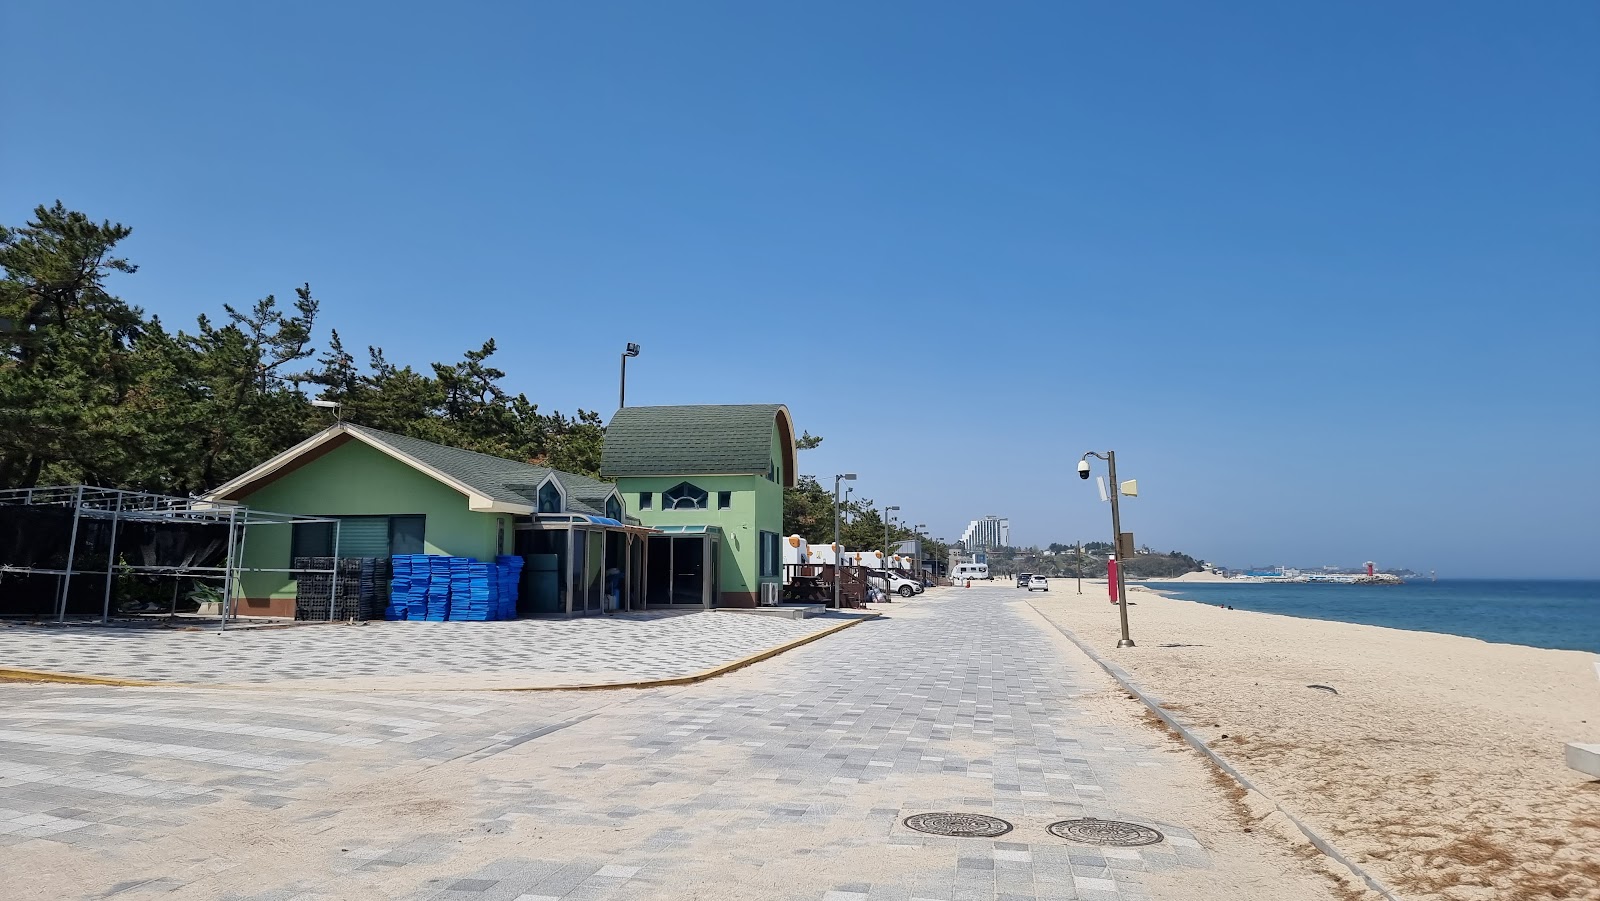 Photo de Yeongok Beach - endroit populaire parmi les connaisseurs de la détente